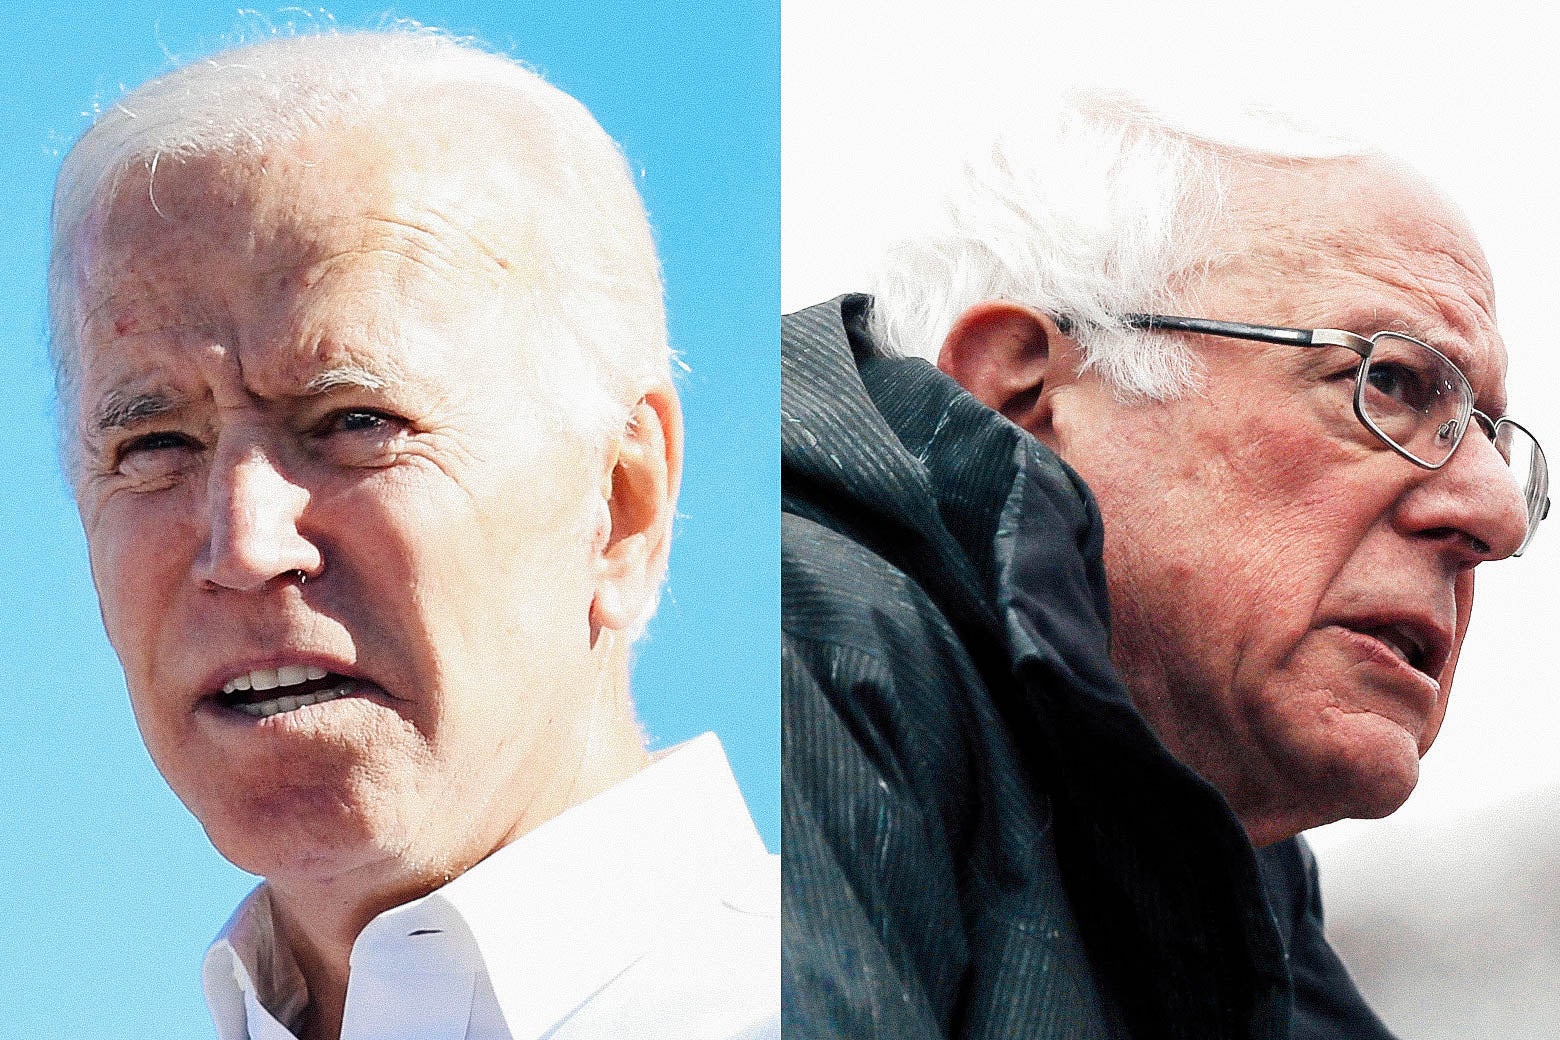 Biden and Sanders seen in close-up head shots.